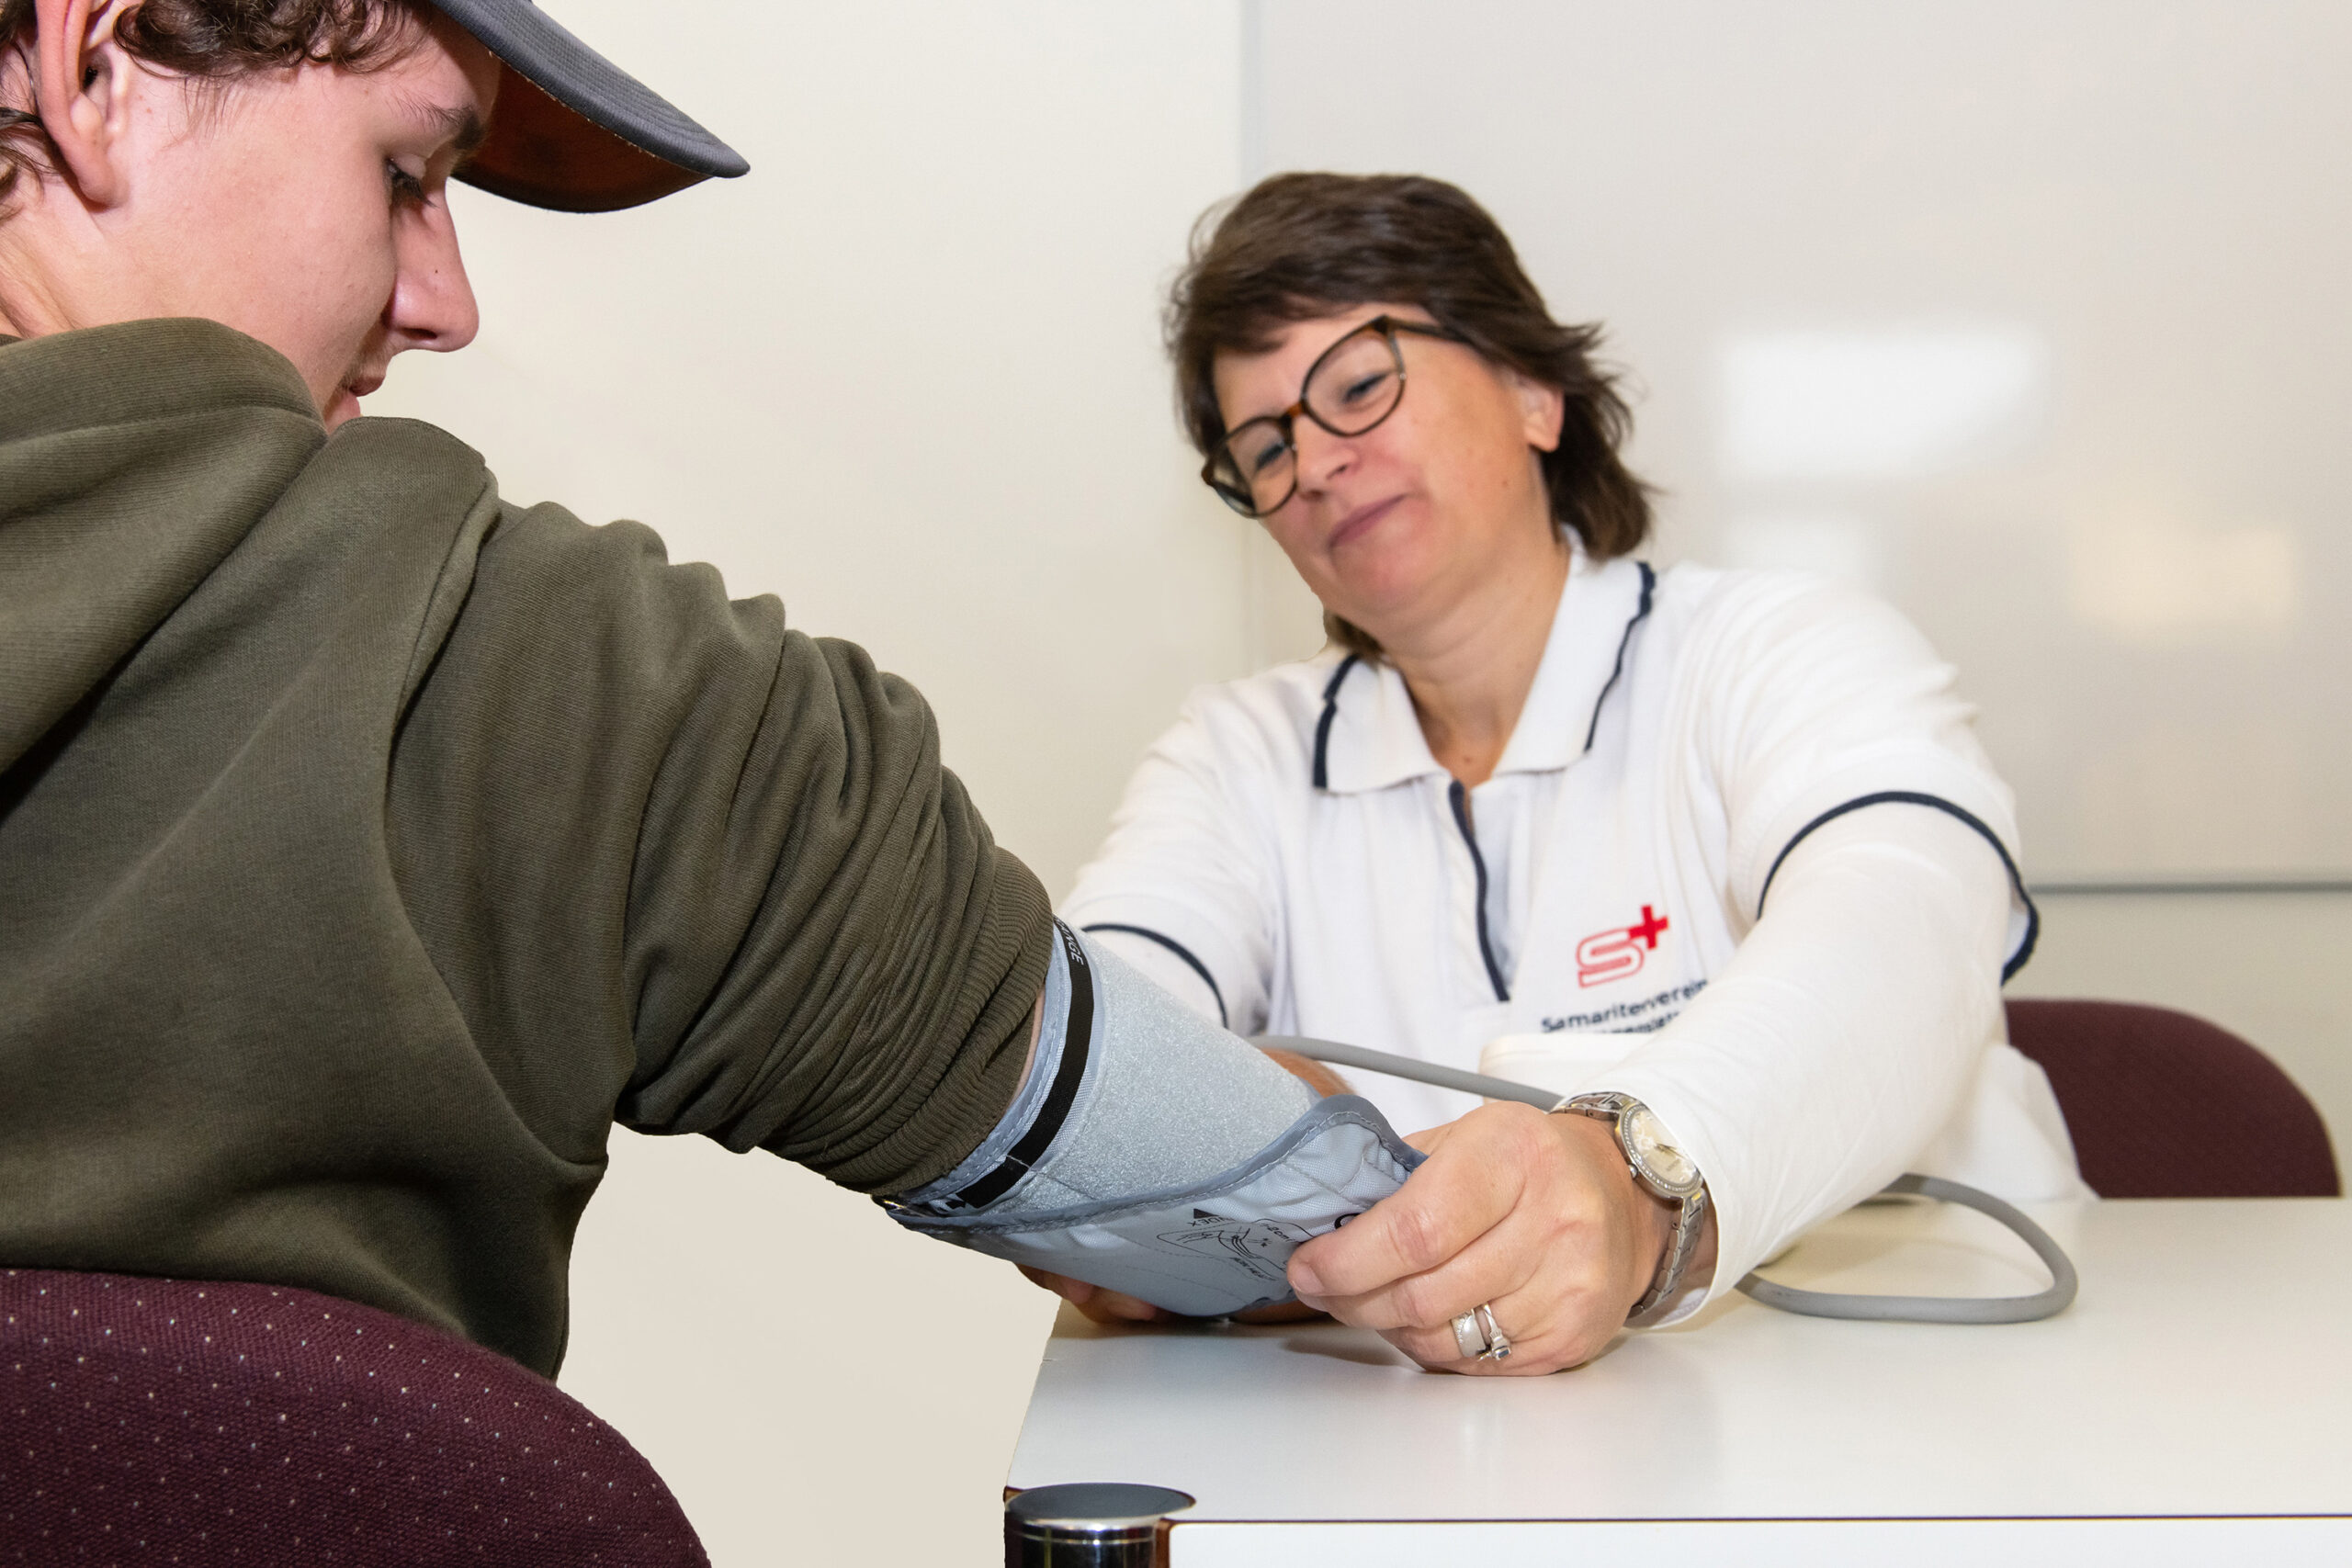 Samariter Mettmenstetten: Blutdruckmessung im Rahmen einer Blutspendeaktion